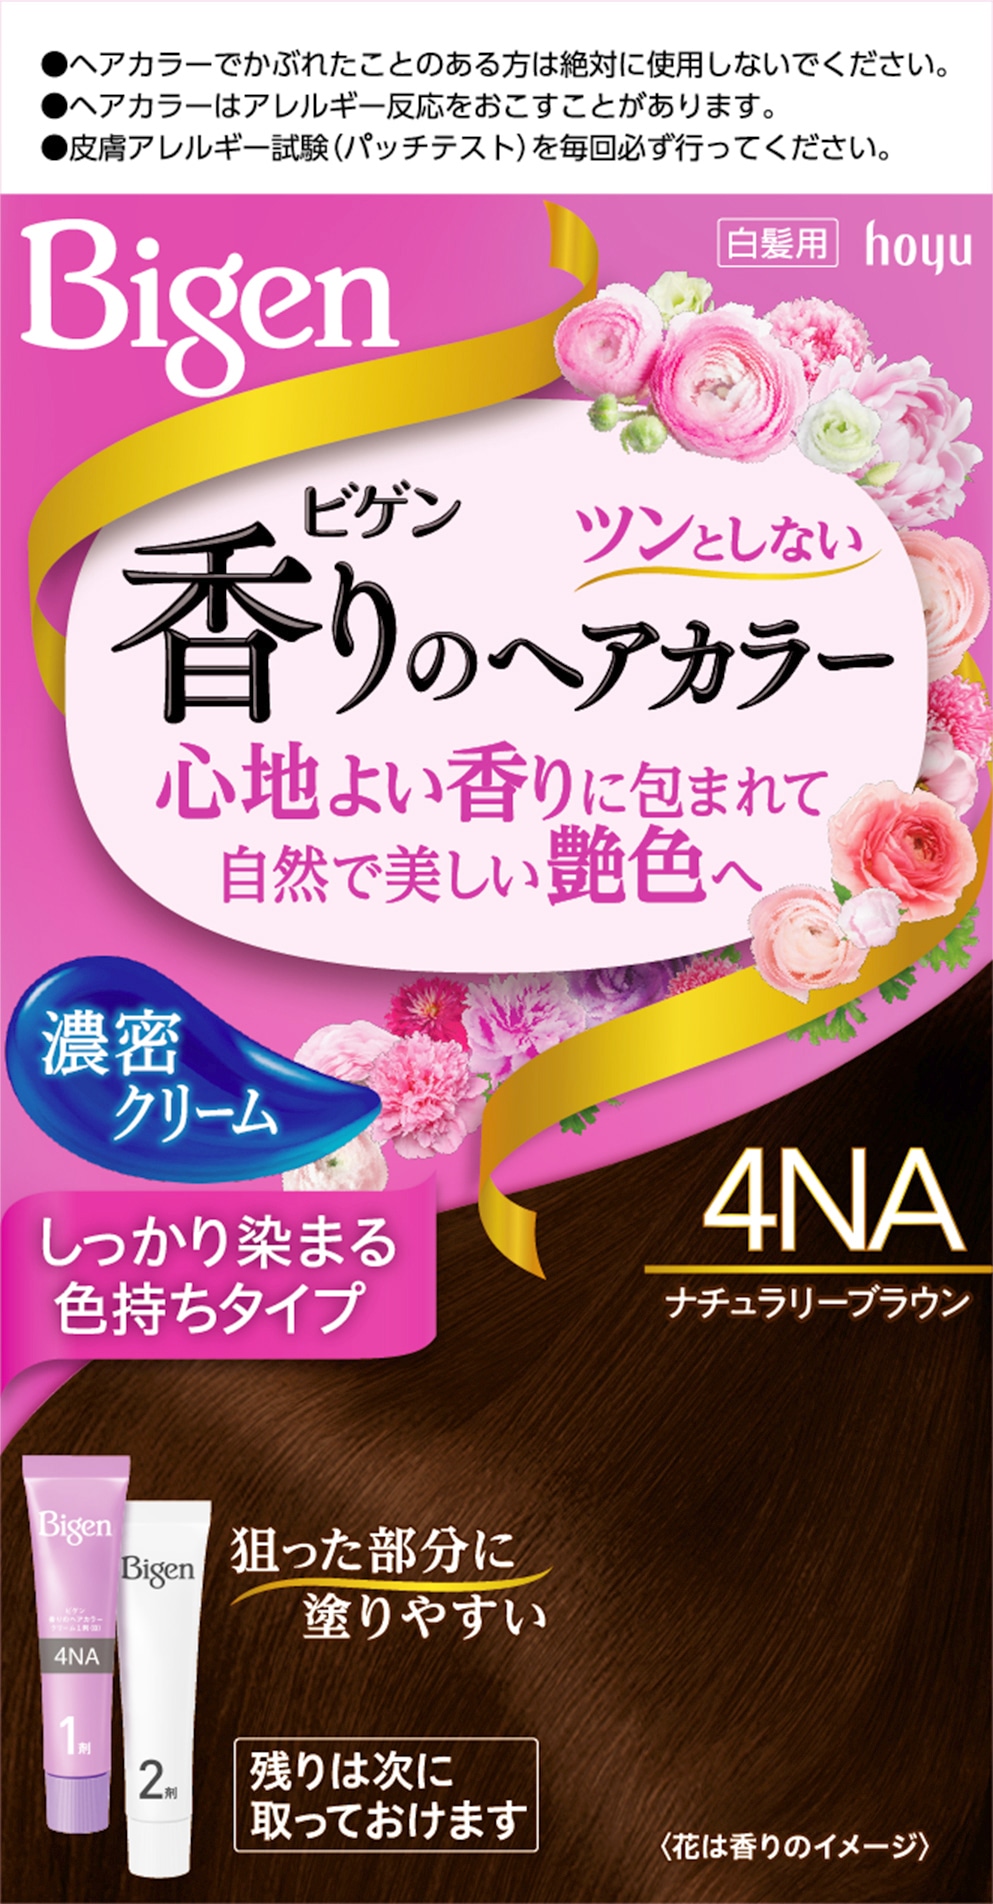 ビゲン 香りのヘアカラークリーム ４ＮＡ(4NA): ビューティーケア 